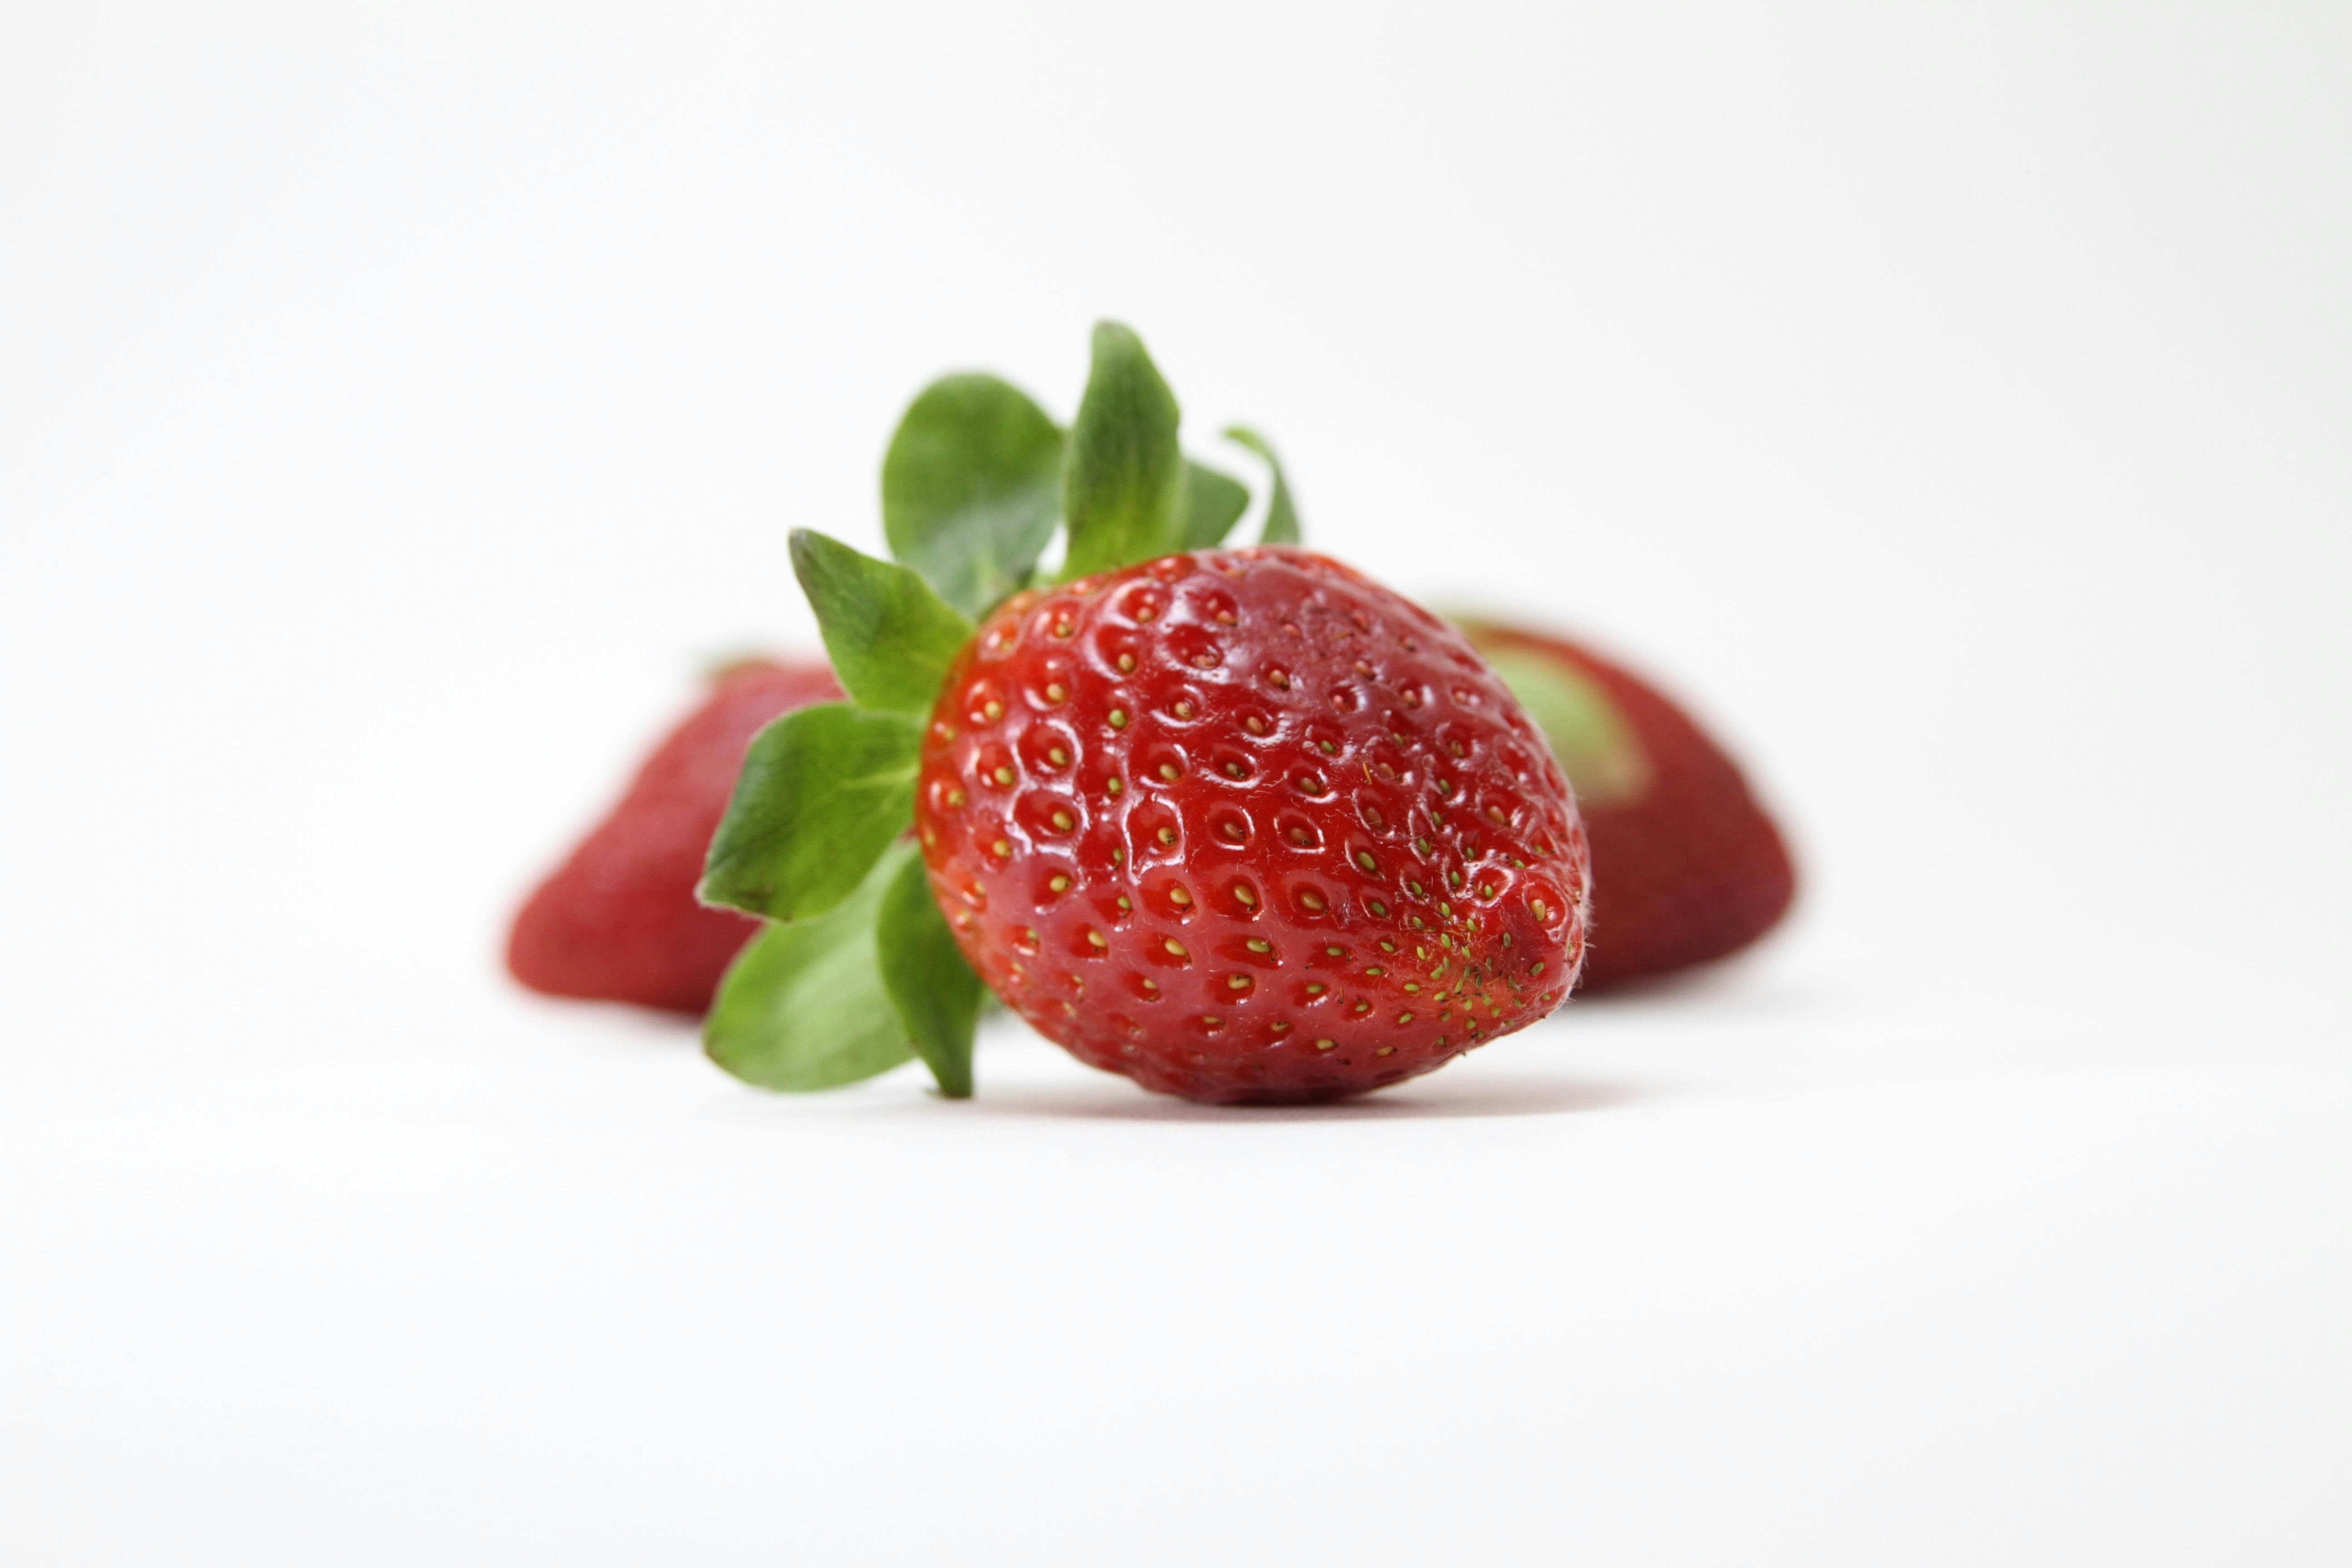 Kostenloses Foto zum Thema: erdbeere, erdbeeren, essen